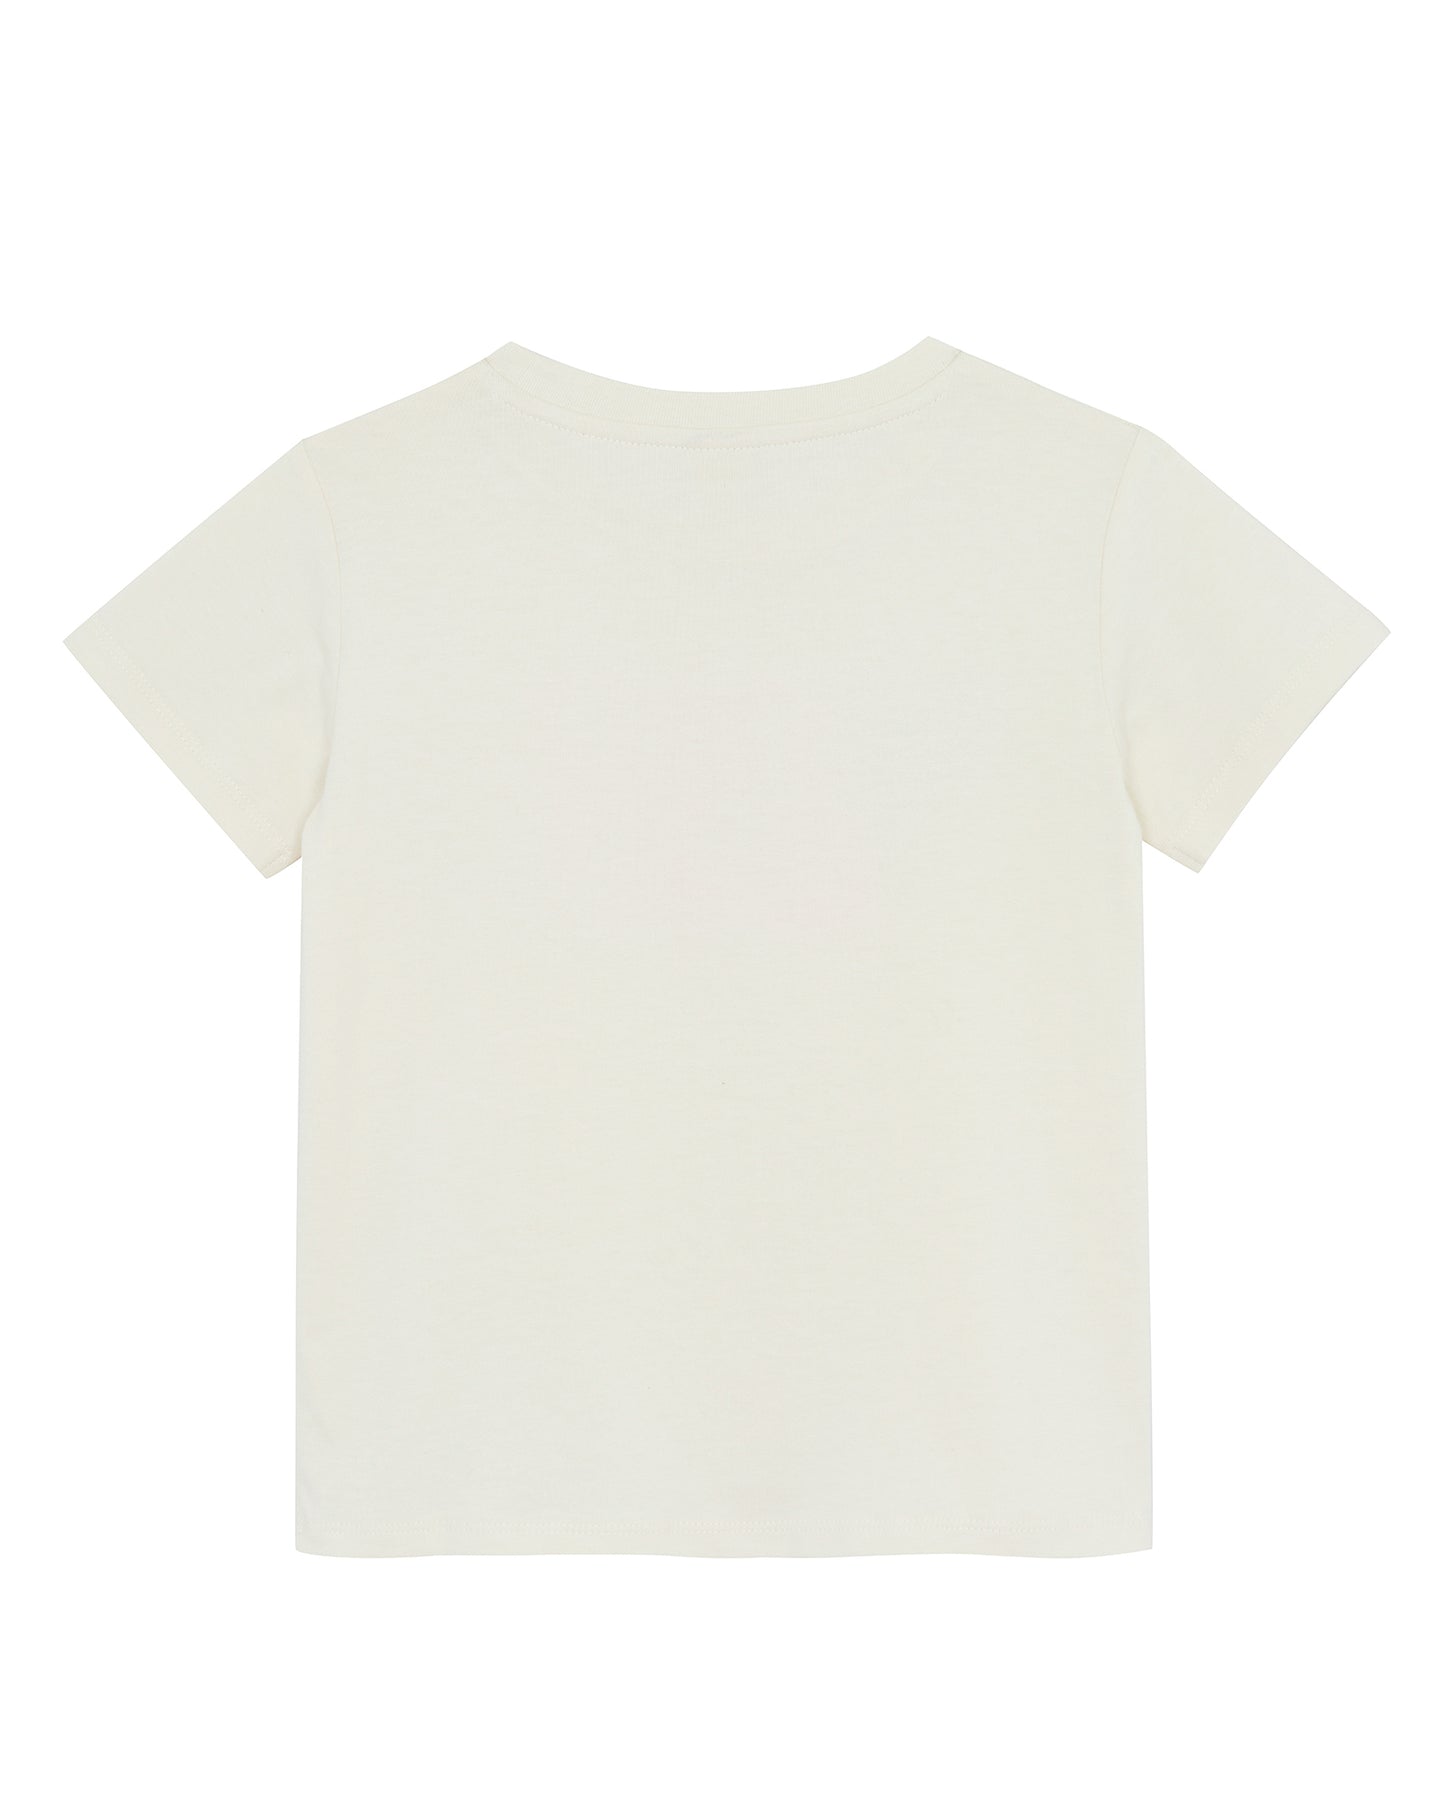 Tee-shirt - Tubog bicolore écru imprimé allez go